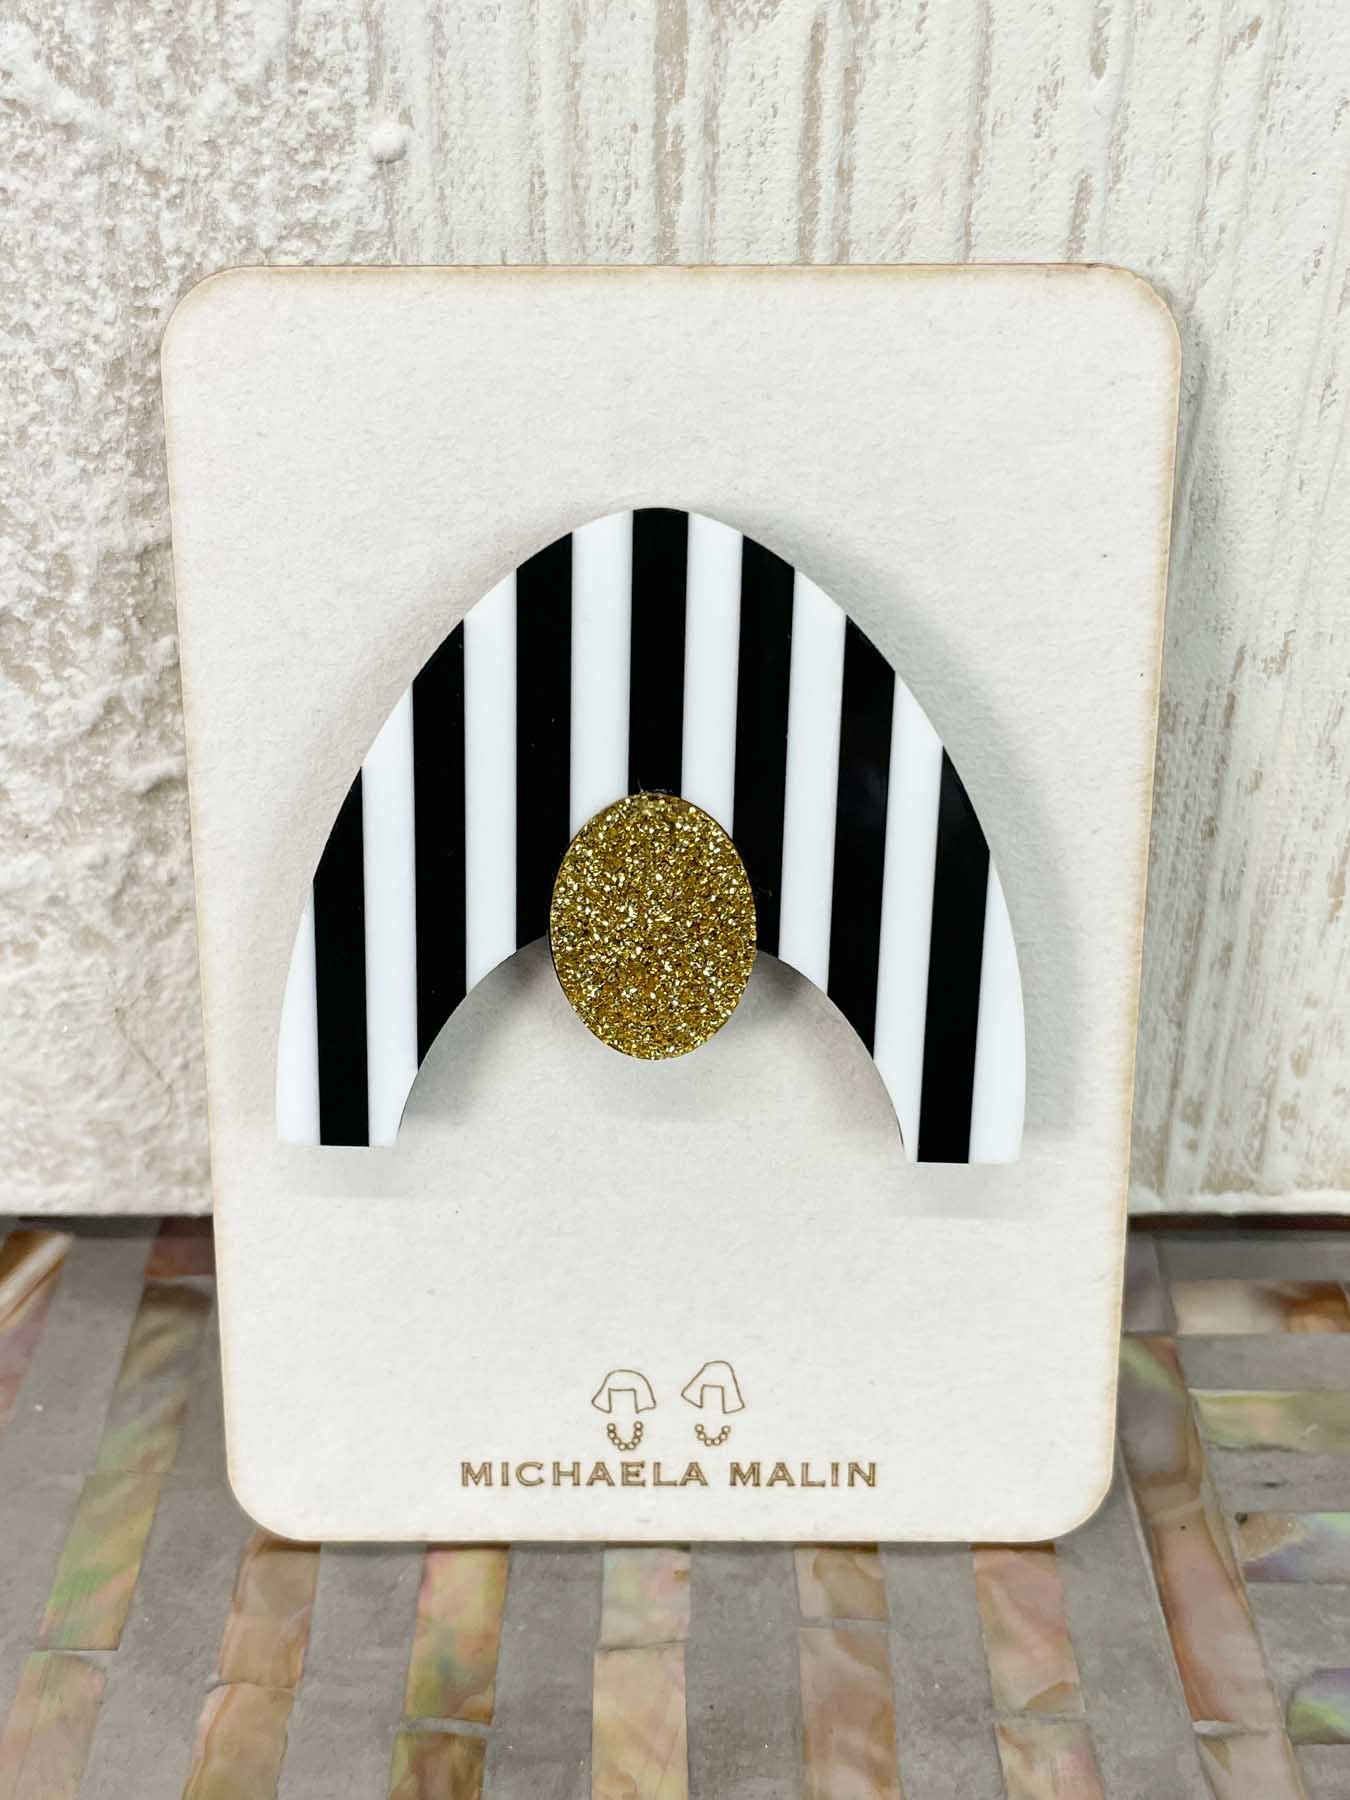 Michaela Malin Swimmer Magnet Brooch, Black/White Stripes & Gold